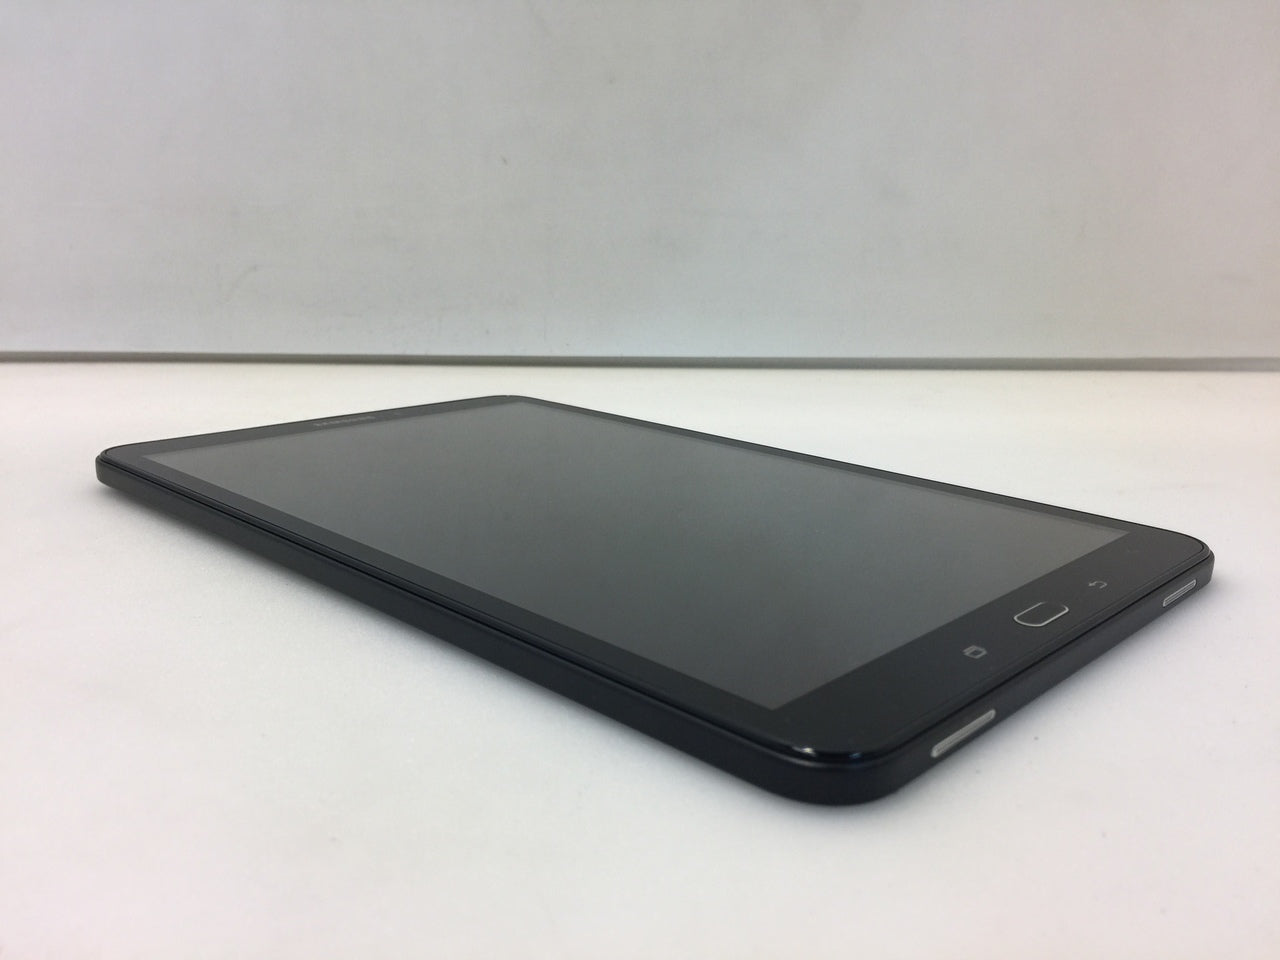 Samsung Galaxy Tab A 10.1 16GB Black SM-T580 (WIFI)